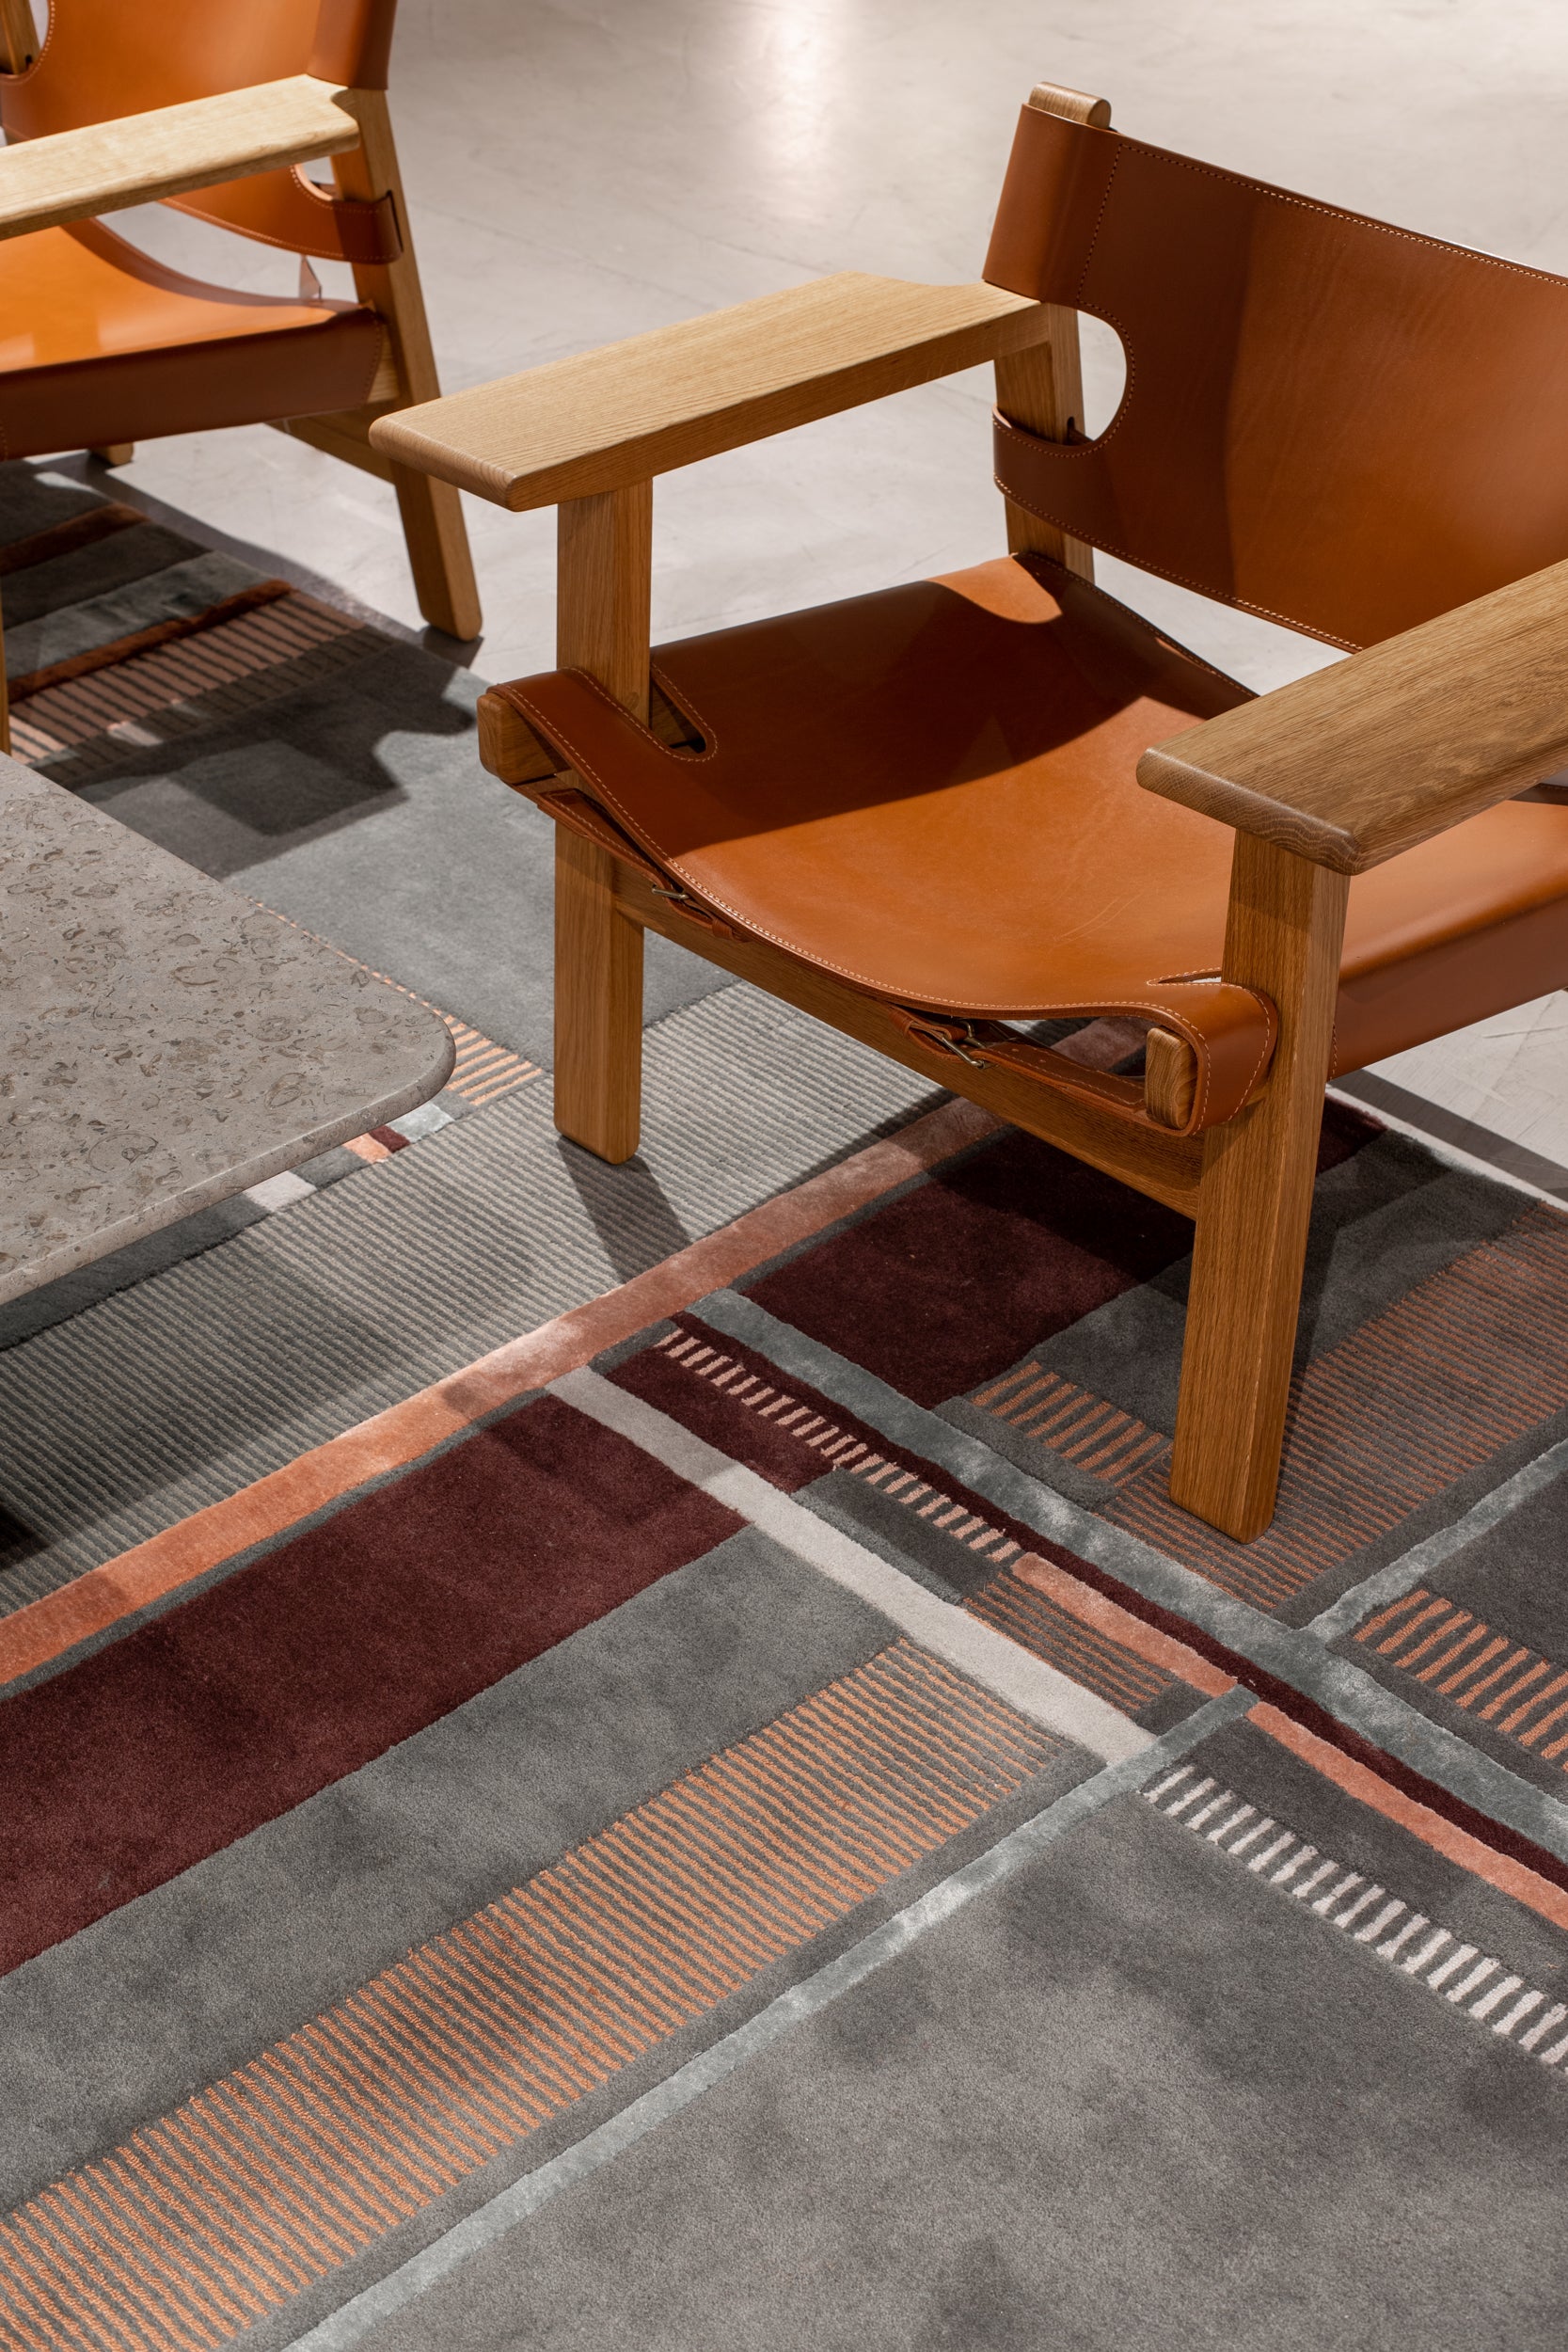 Luxury modern rugs